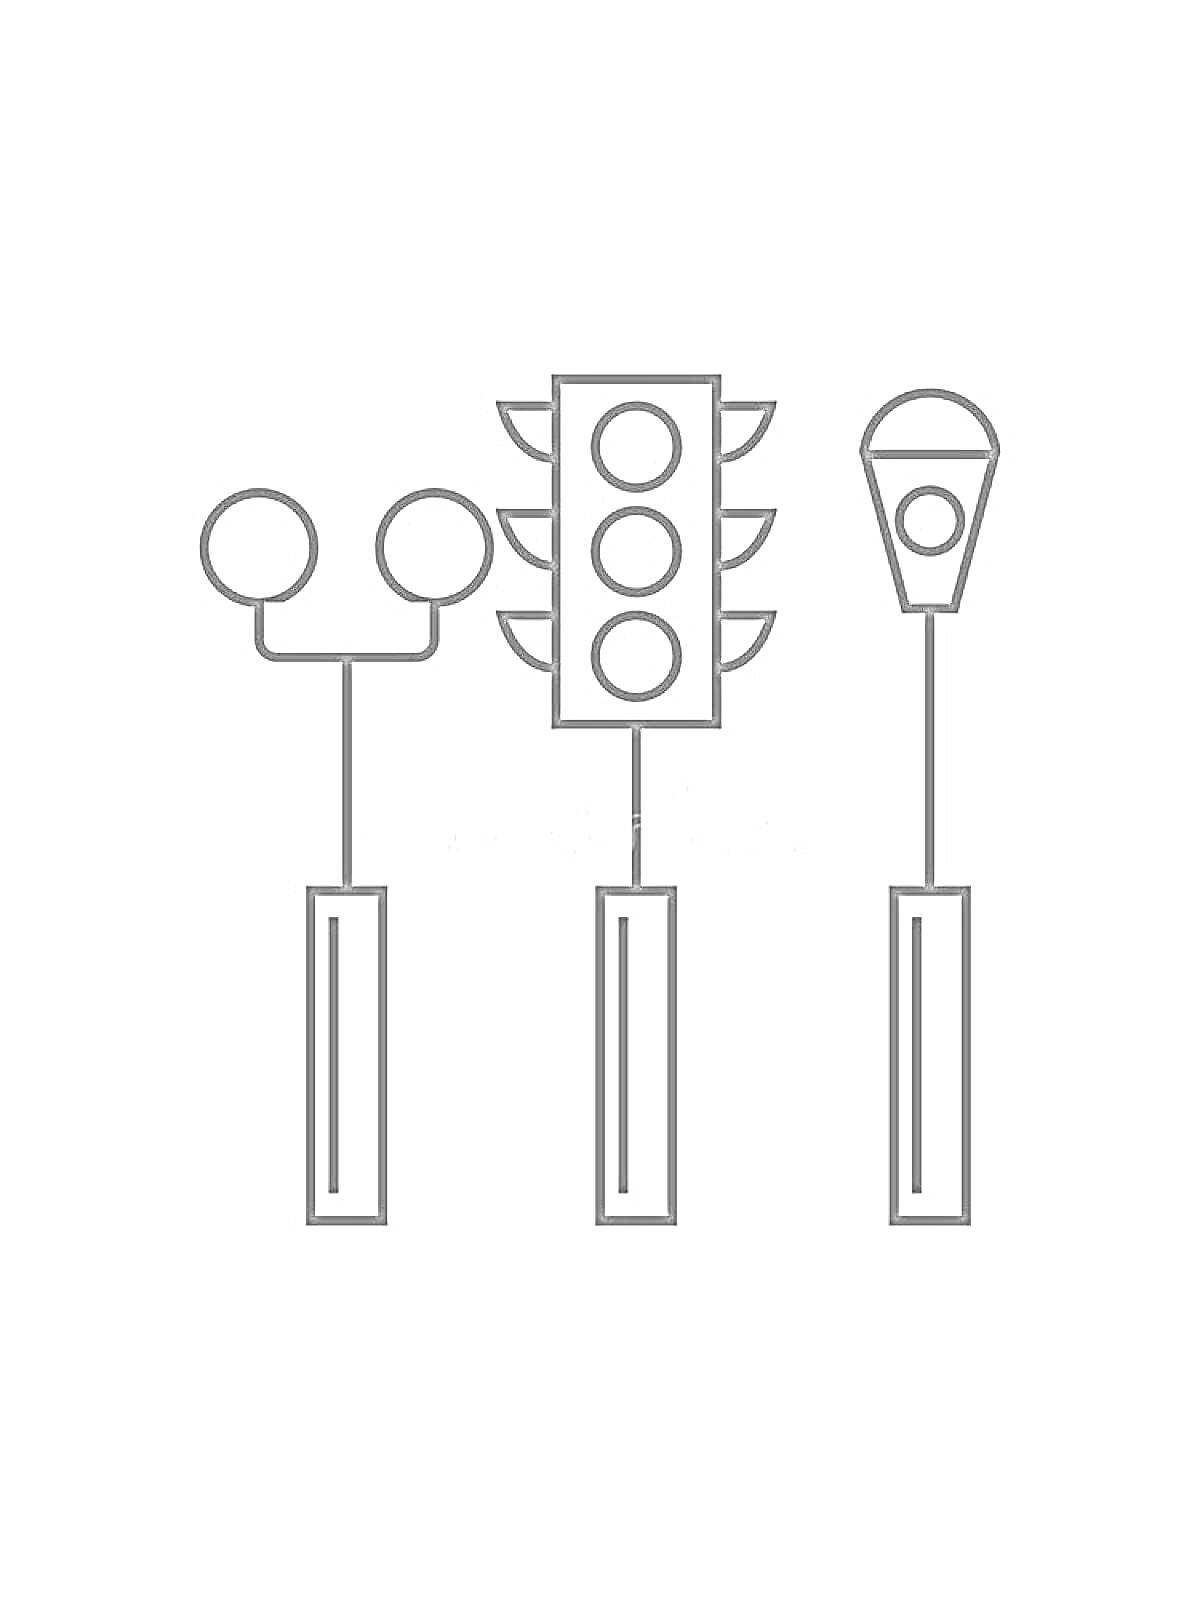 Раскраска Три светофора разного типа на столбах